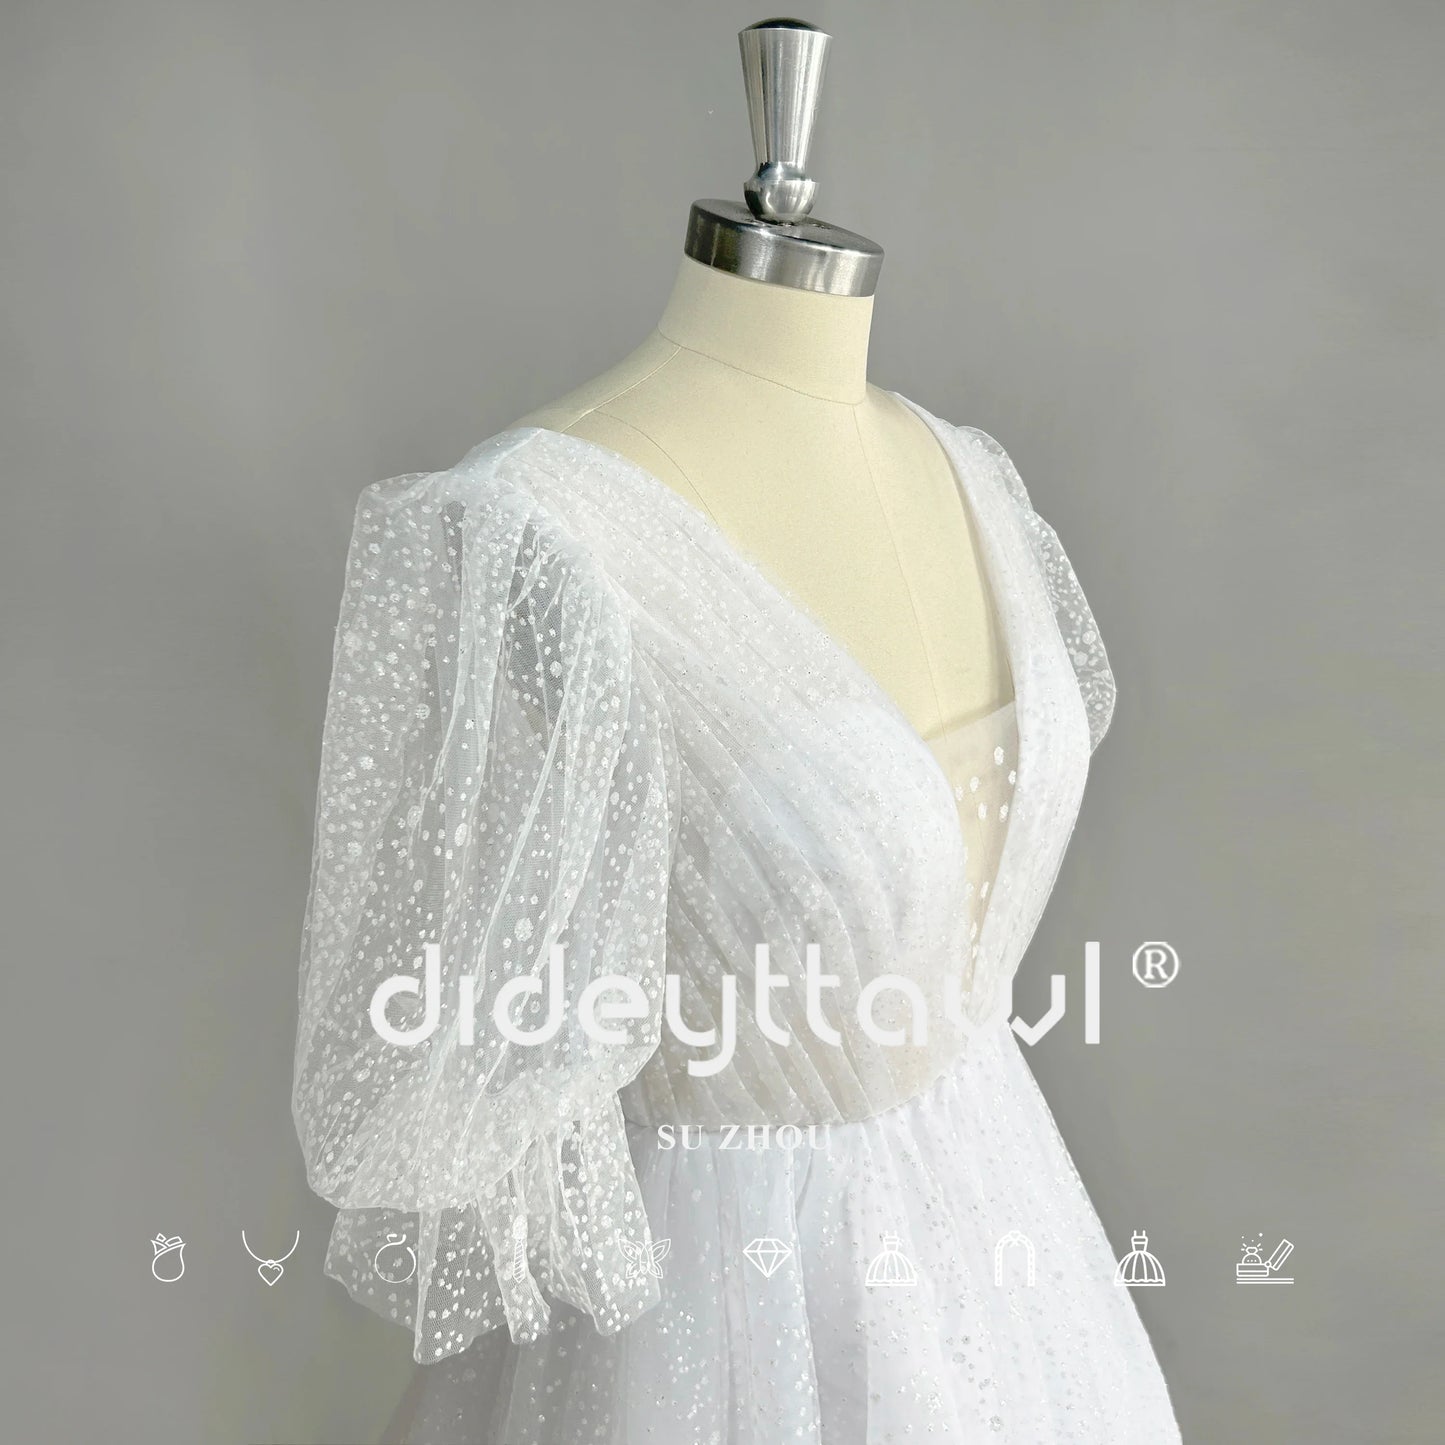 Mangas de sopro de sopa de tule brilhante Mini vestido de noiva curto V de pescoço de costas acima do joelho vestido de noiva brilhante